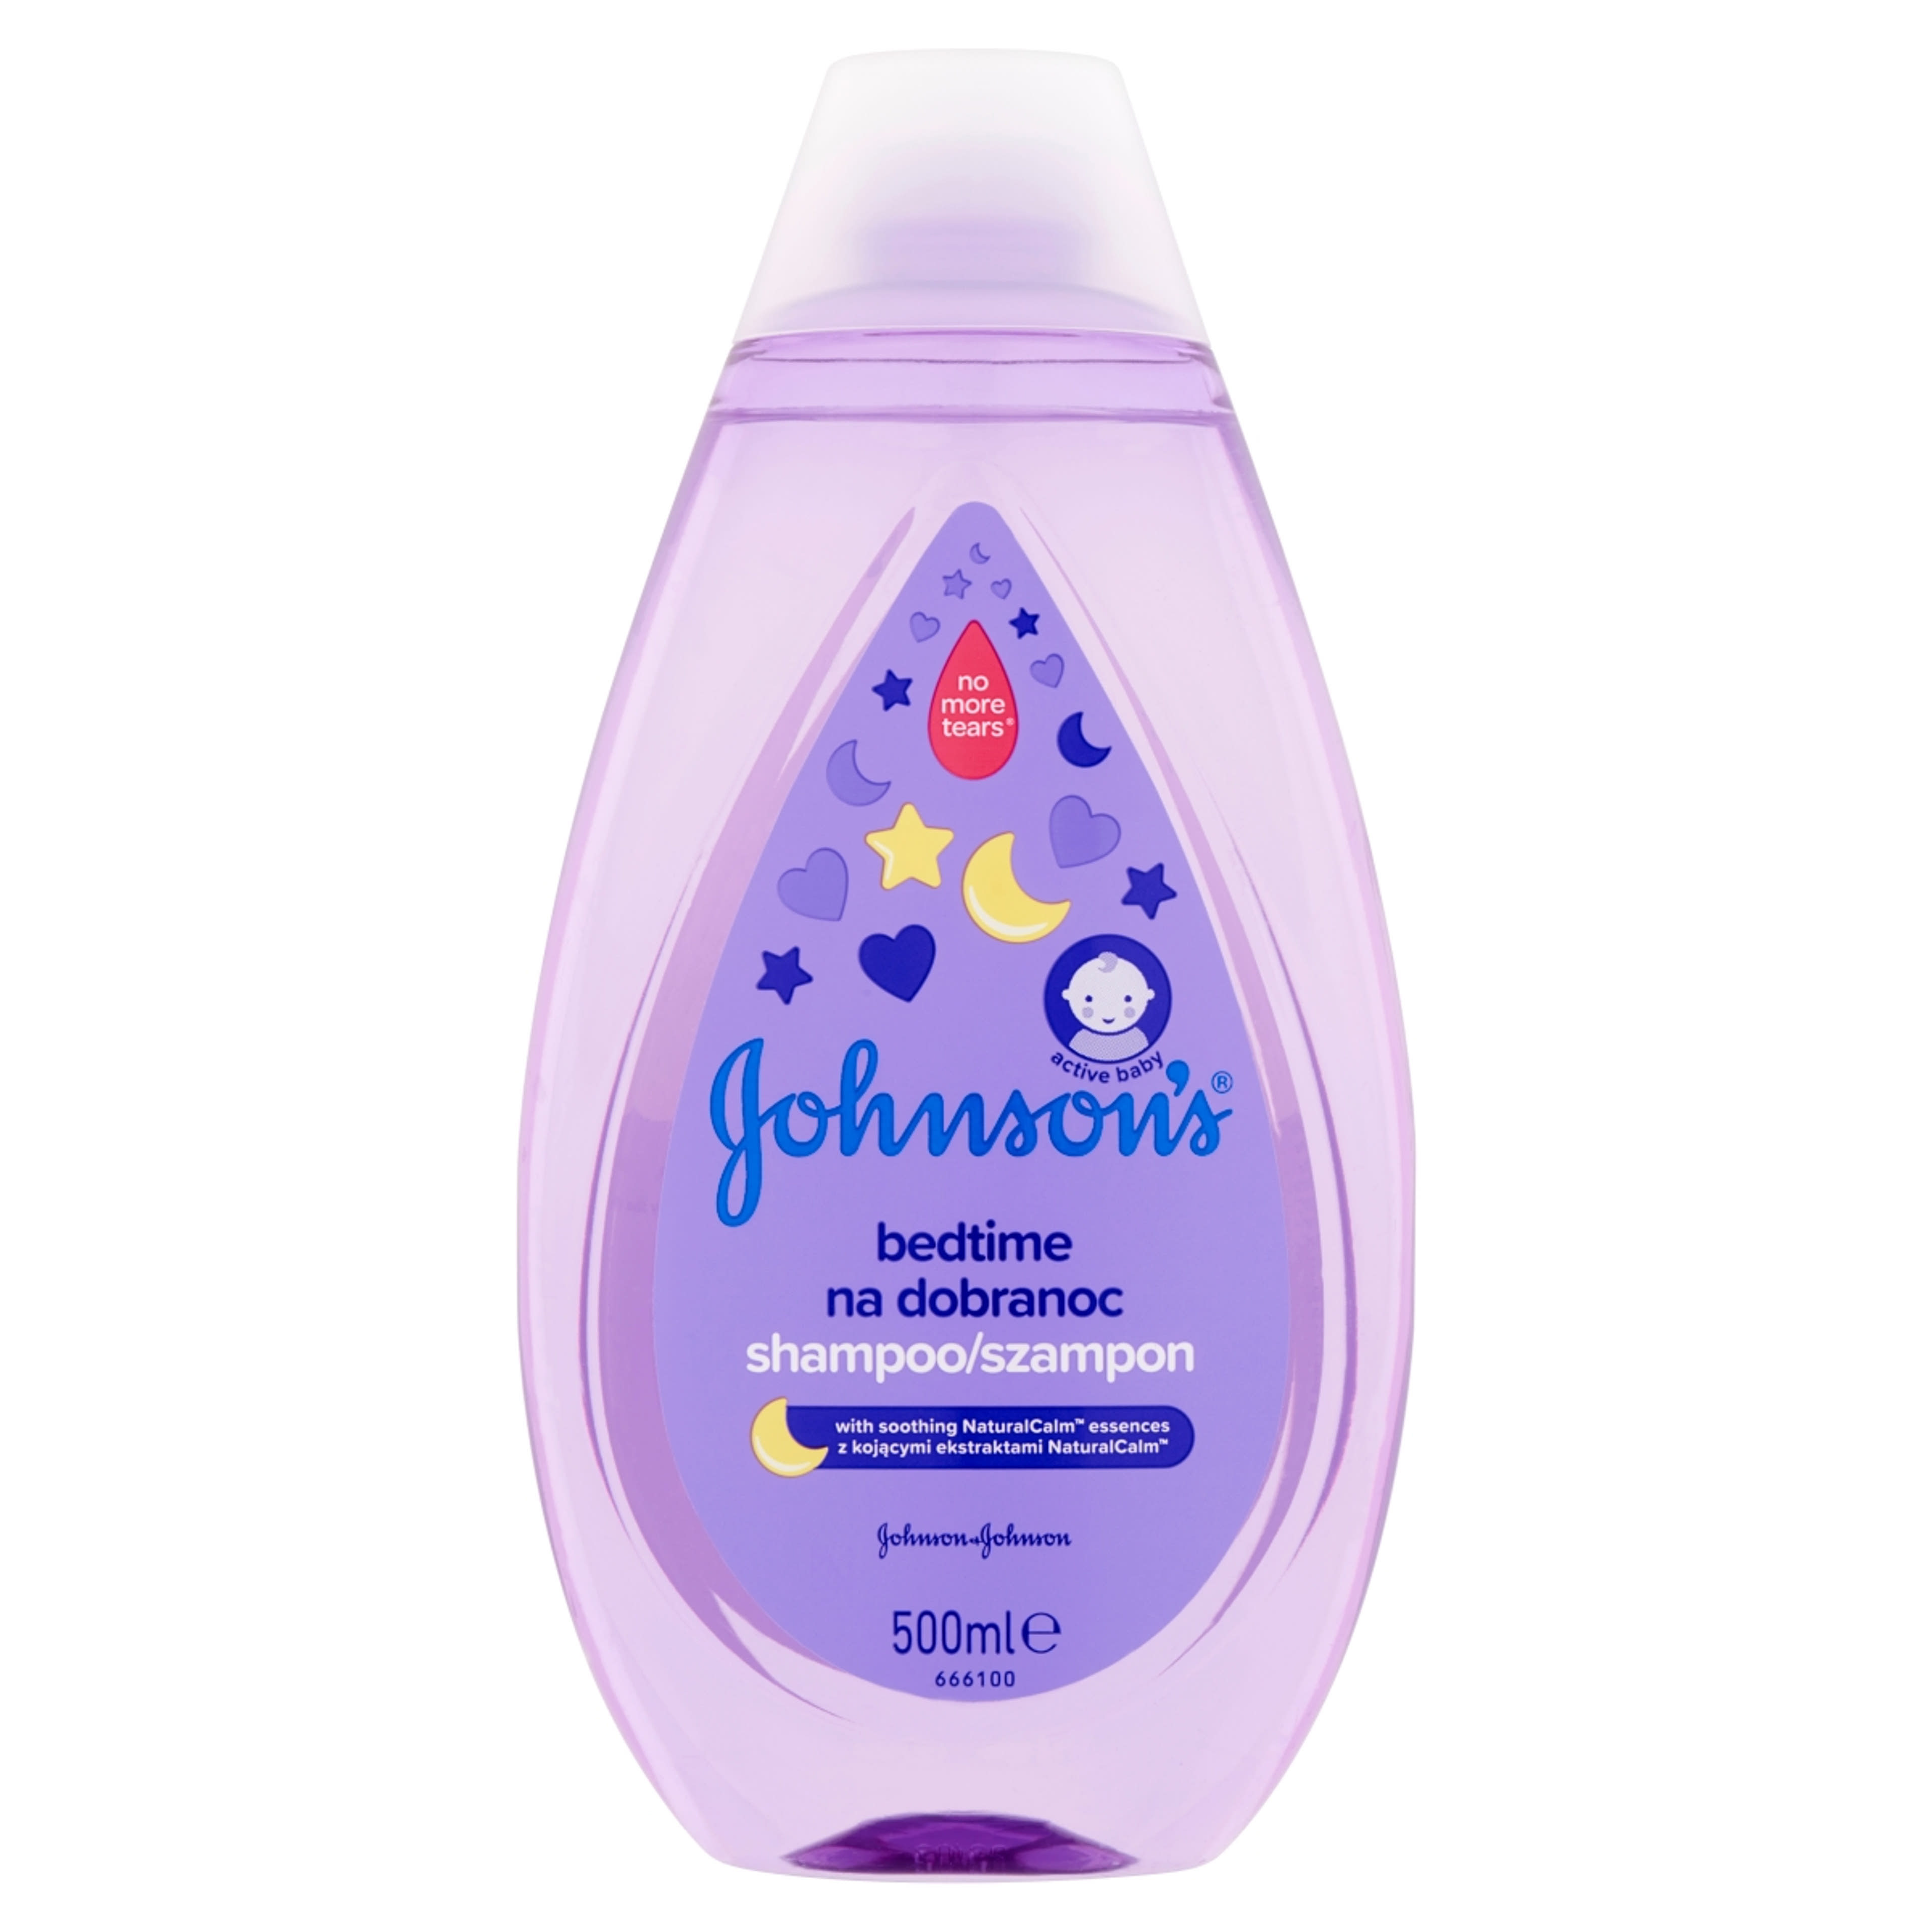 Johnson's Bedtime babasampon  - 500 ml